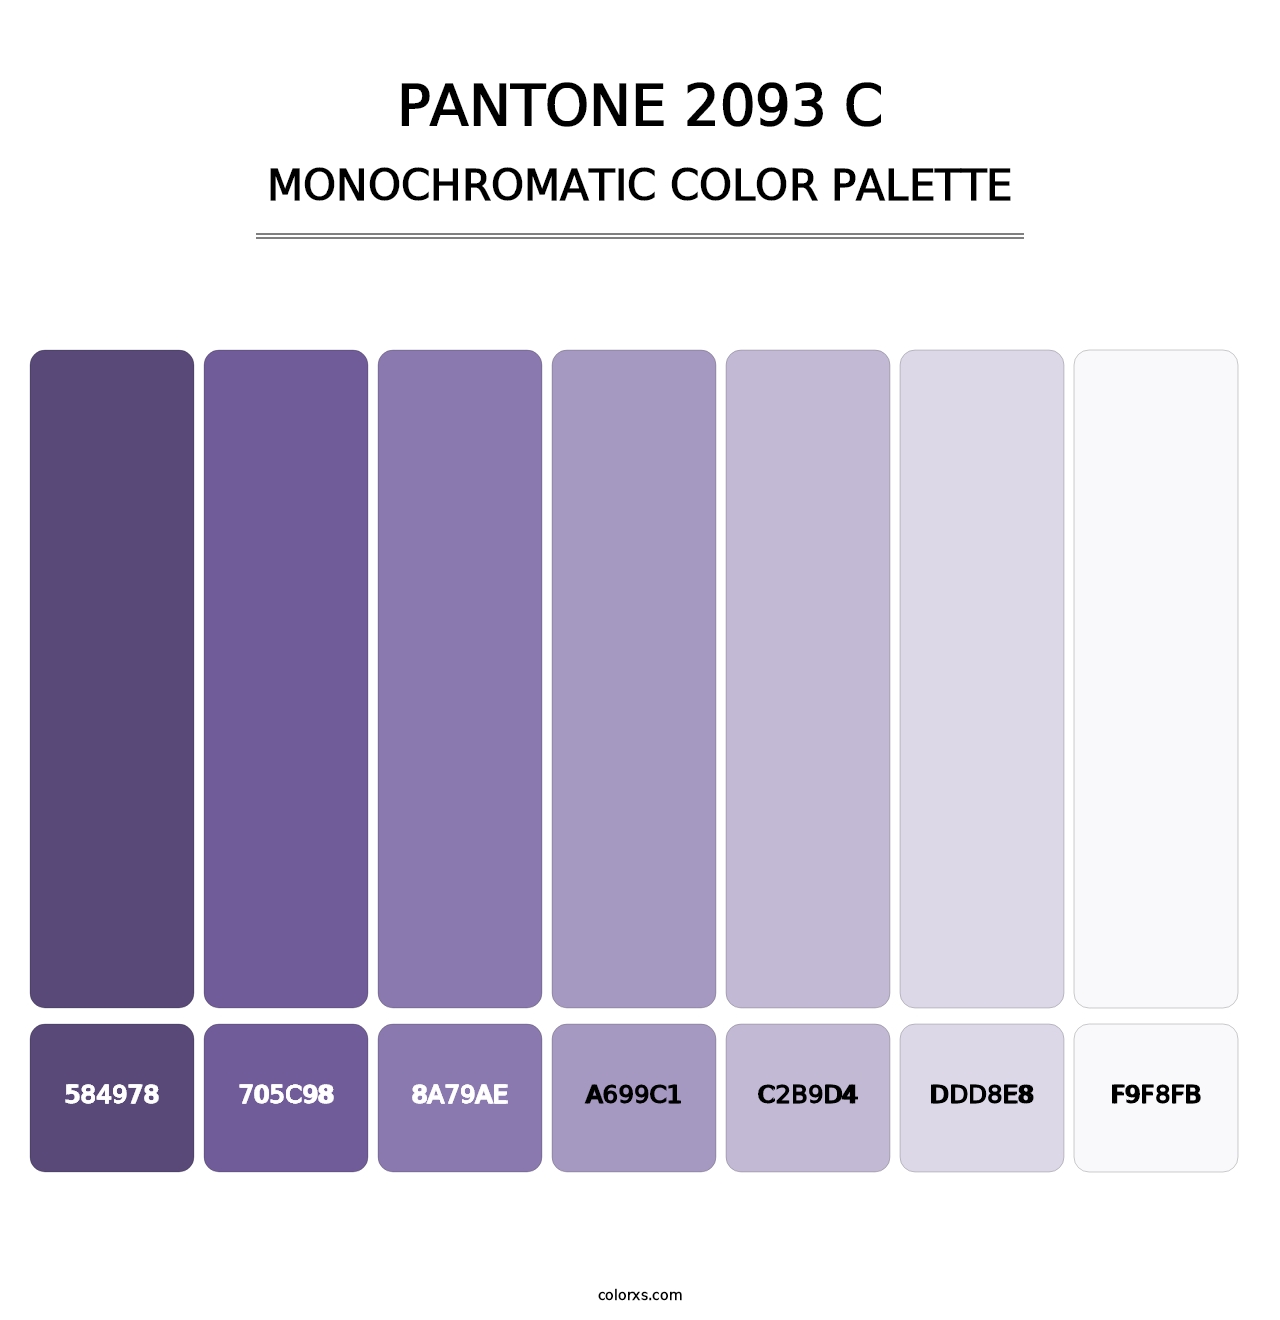 PANTONE 2093 C - Monochromatic Color Palette